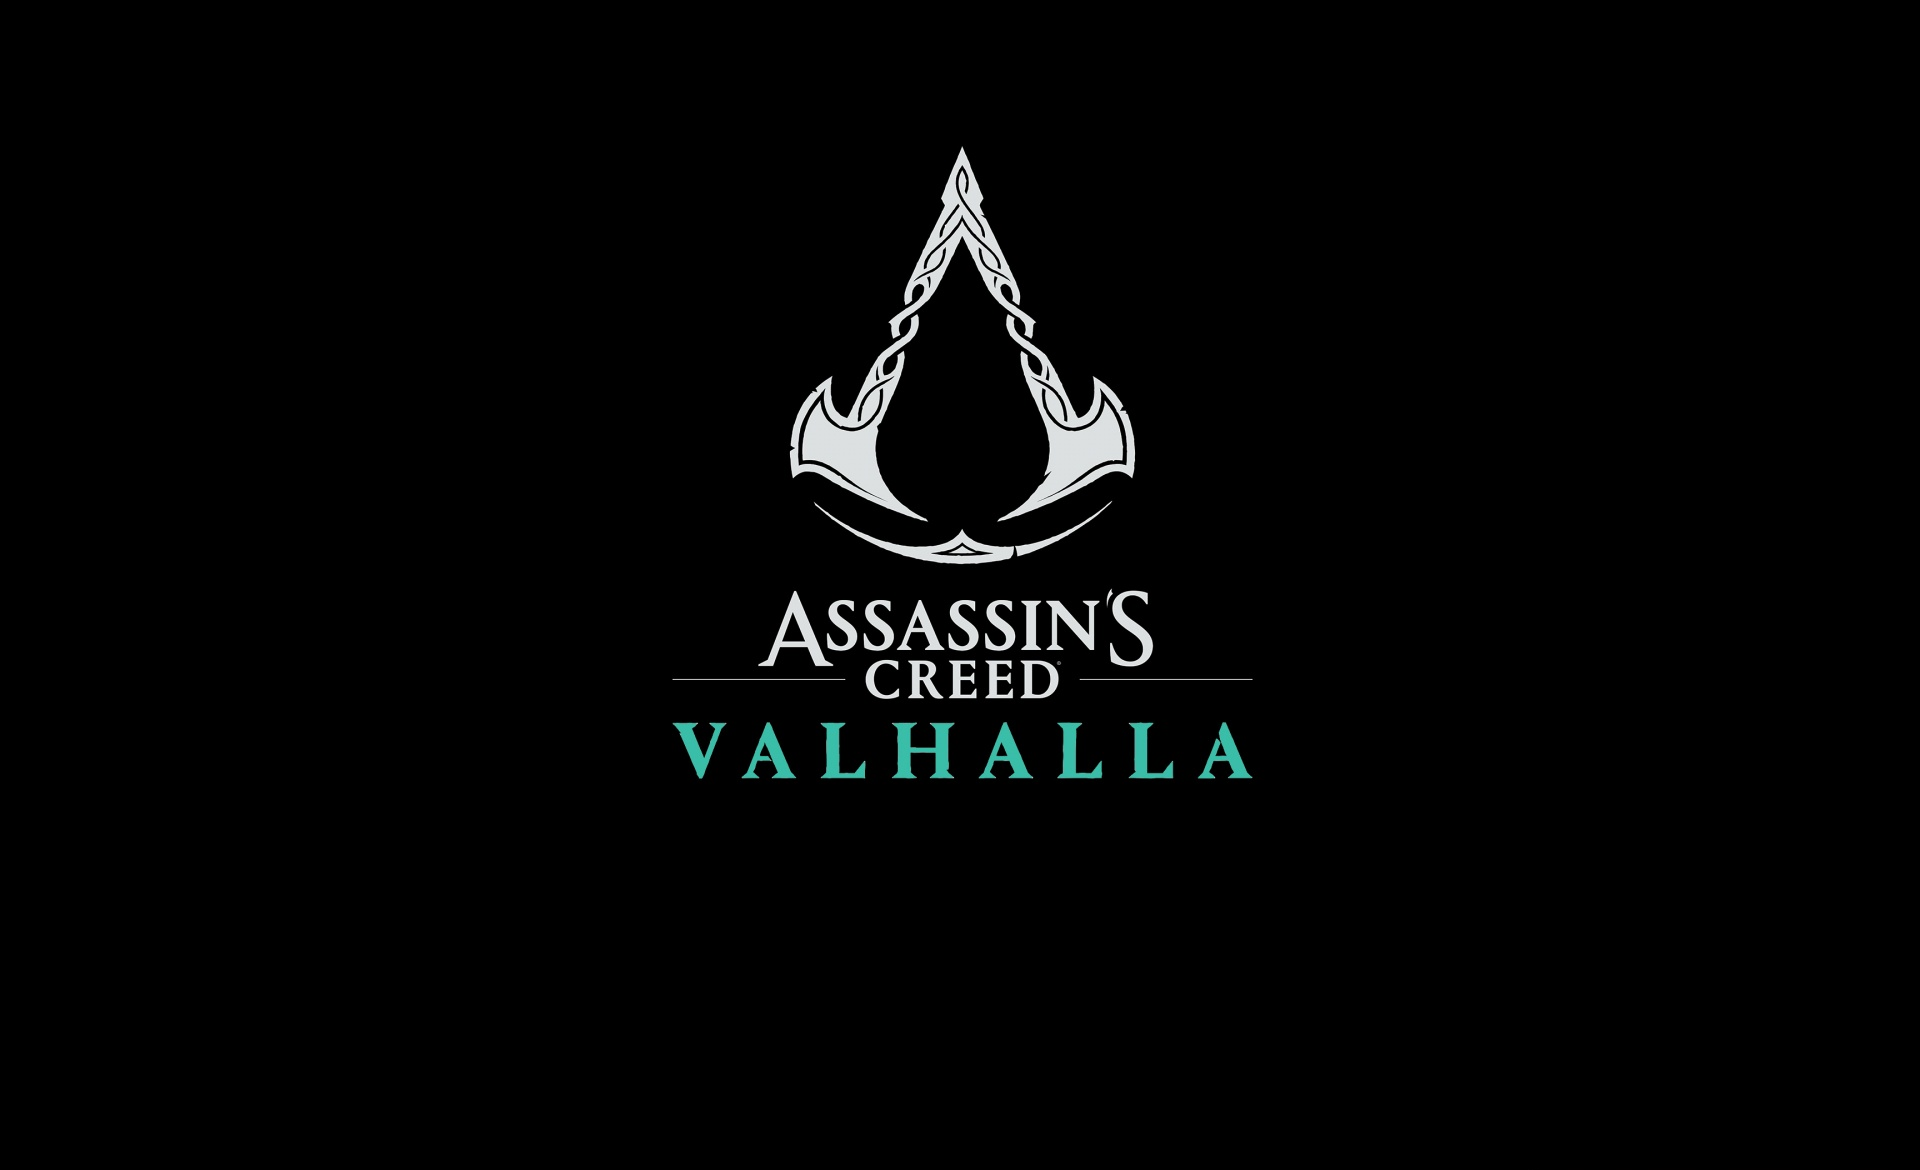 Assassin’s Creed Valhalla je v prvem tednu prodala več enot kot katera koli druga igra Assassin’s Creed